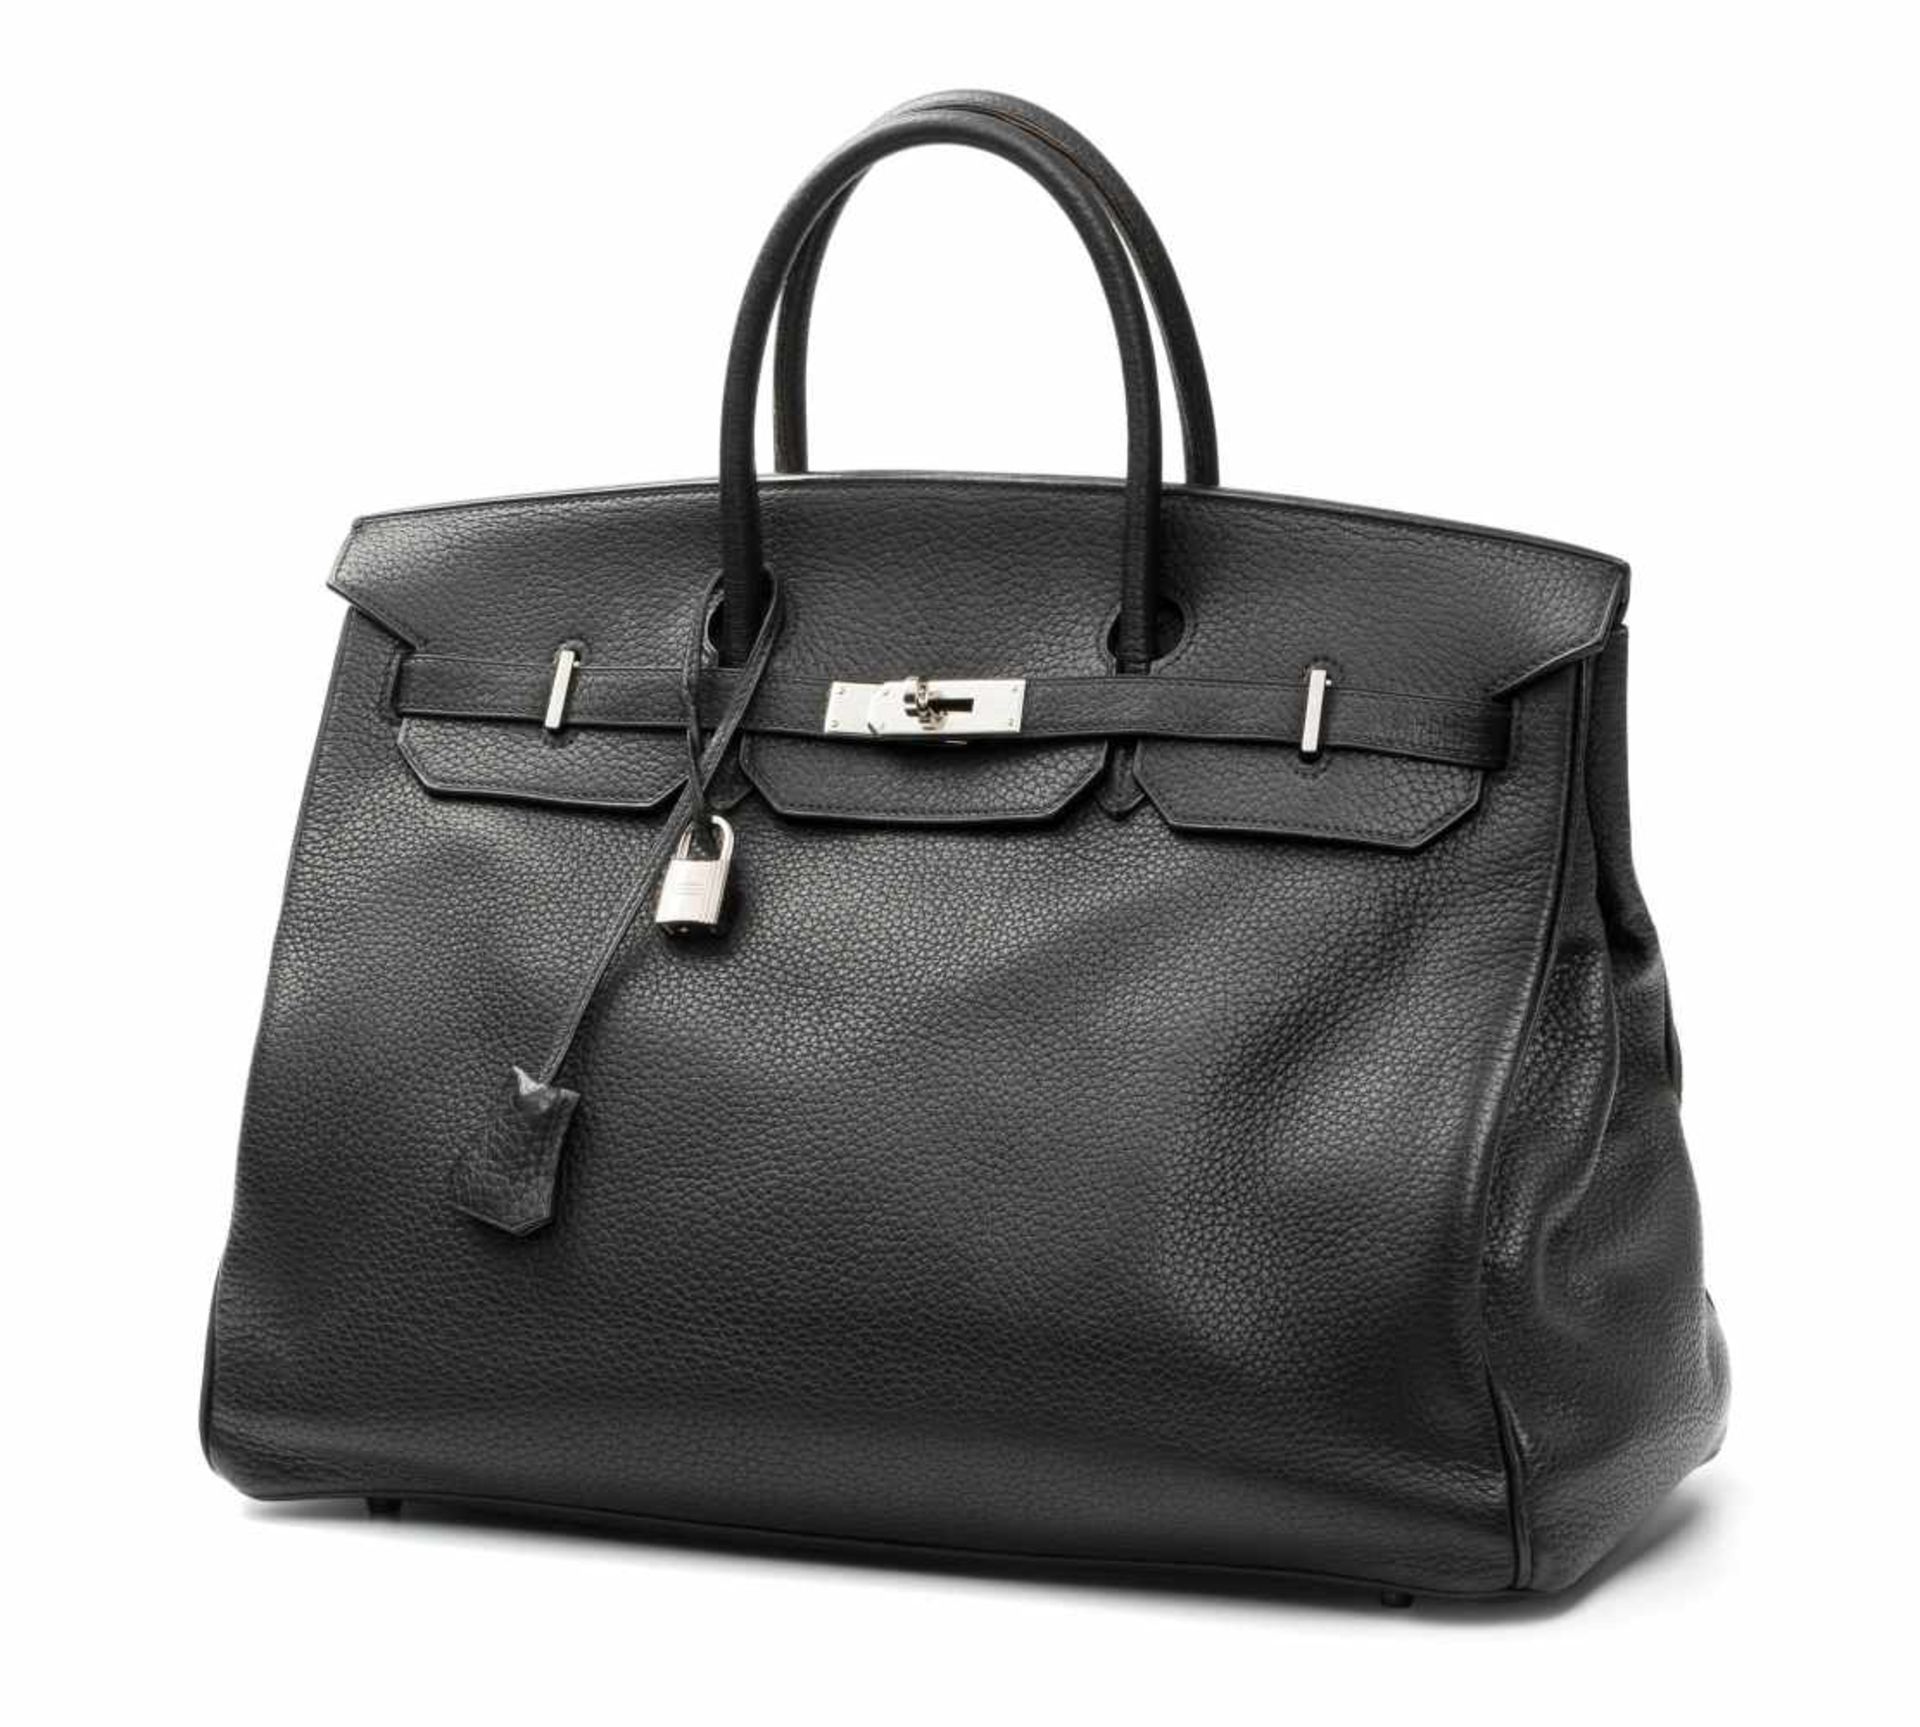 Hermès, Handtasche "Birkin"40 cm. Aus dem Jahr 2003. Schwarzes Togo-Leder. Versilberte, - Bild 2 aus 2